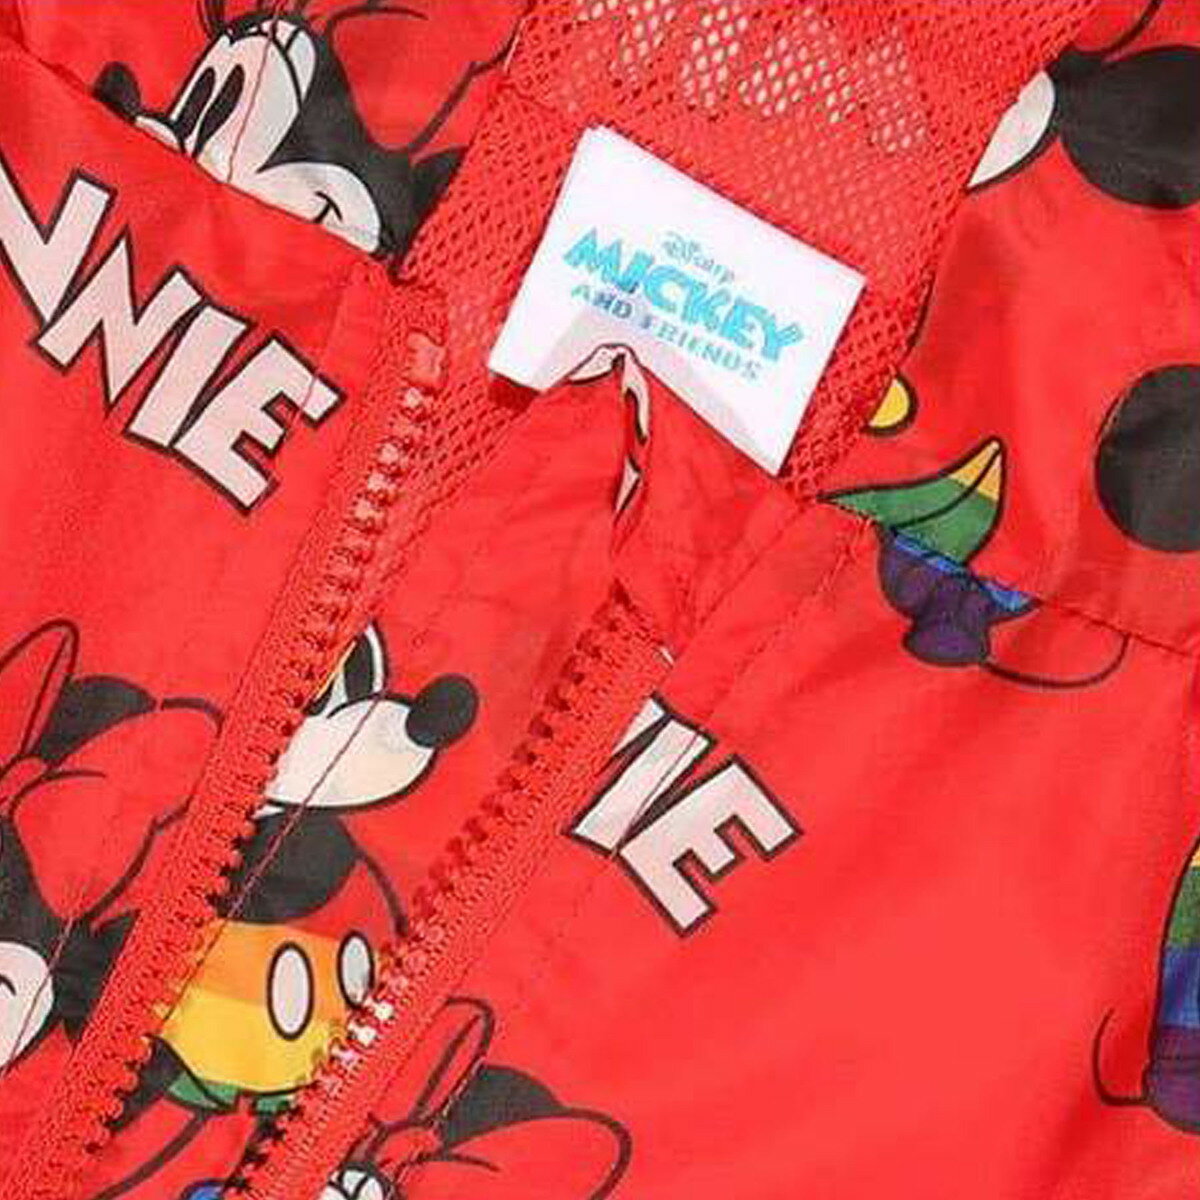 (ディズニー) Disney オフィシャル商品 キッズ・子供 ボーイズ Mickey and Minnie 全面柄 レインコート ジャケット アウター 【海外通販】